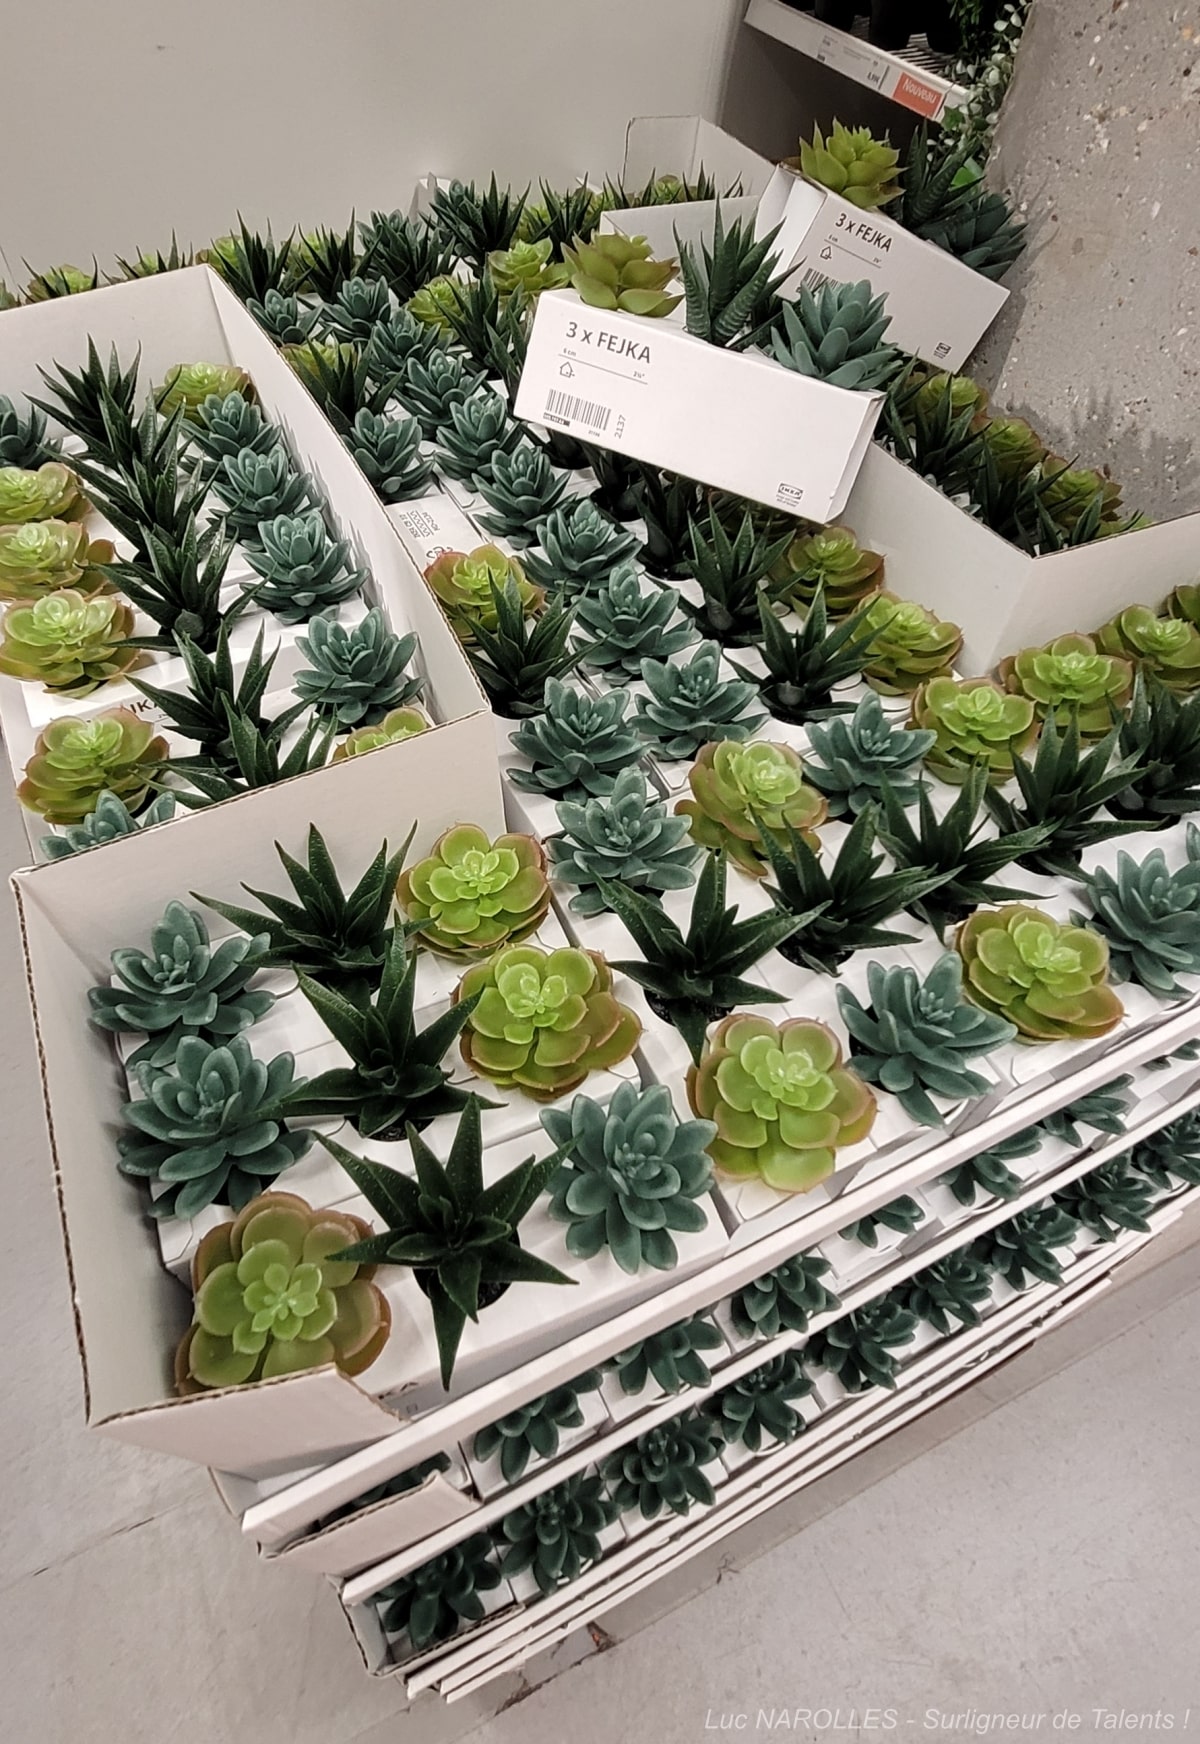 [Photo] Clin d’oeil - IKEA Paris La Madeleine – Décoration – Végétal : Le plastique est fantastique